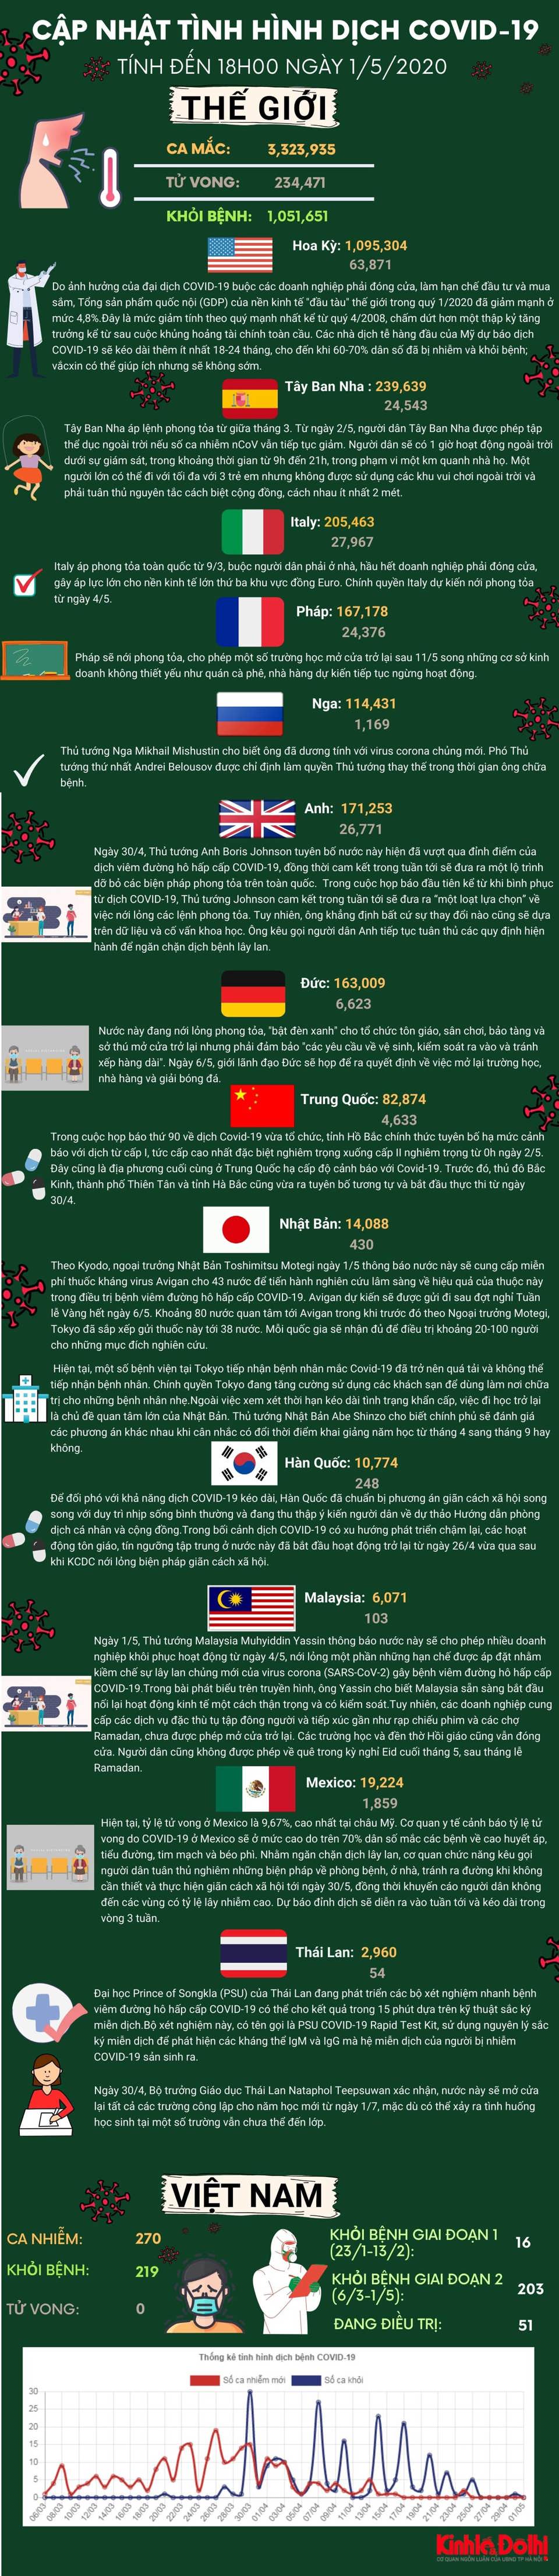 [Infographic] Dịch Covid-19 tối 1/5: Trung Quốc ra khỏi Top 10 nước có ca nhiễm nhiều nhất, Brazil có thể thành tâm dịch mới - Ảnh 1